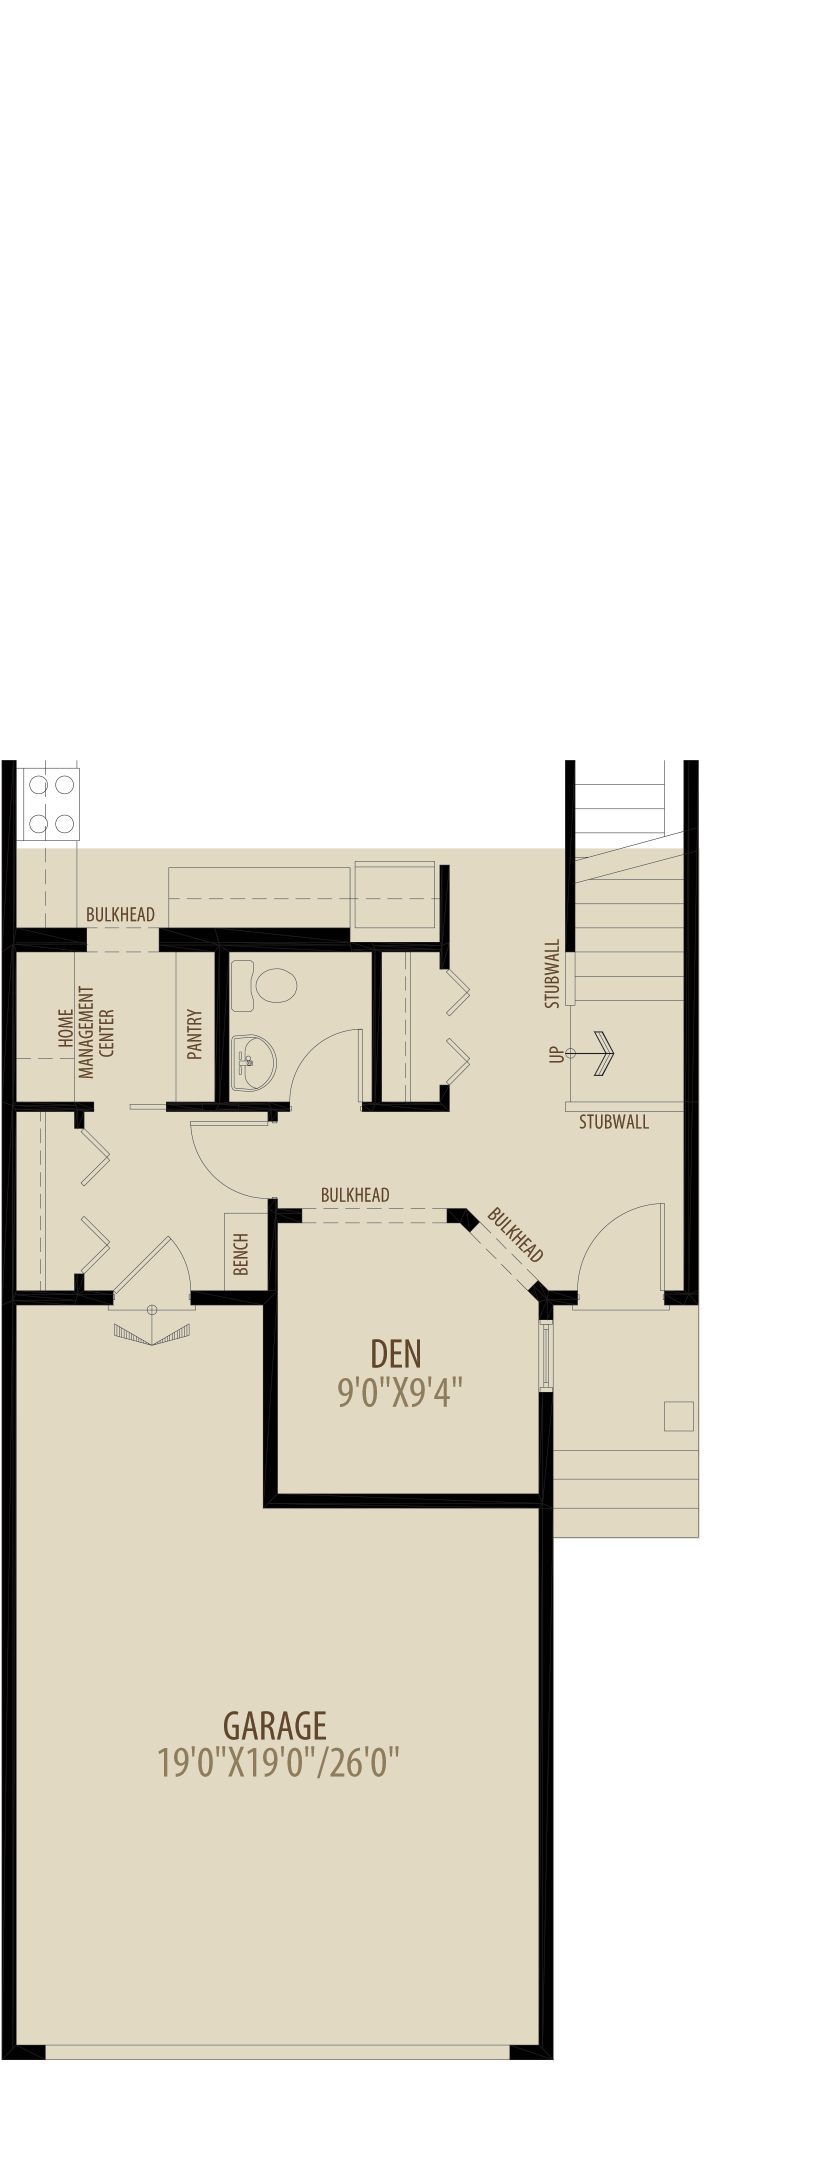 Main Floor Den Adds 70 sq ft